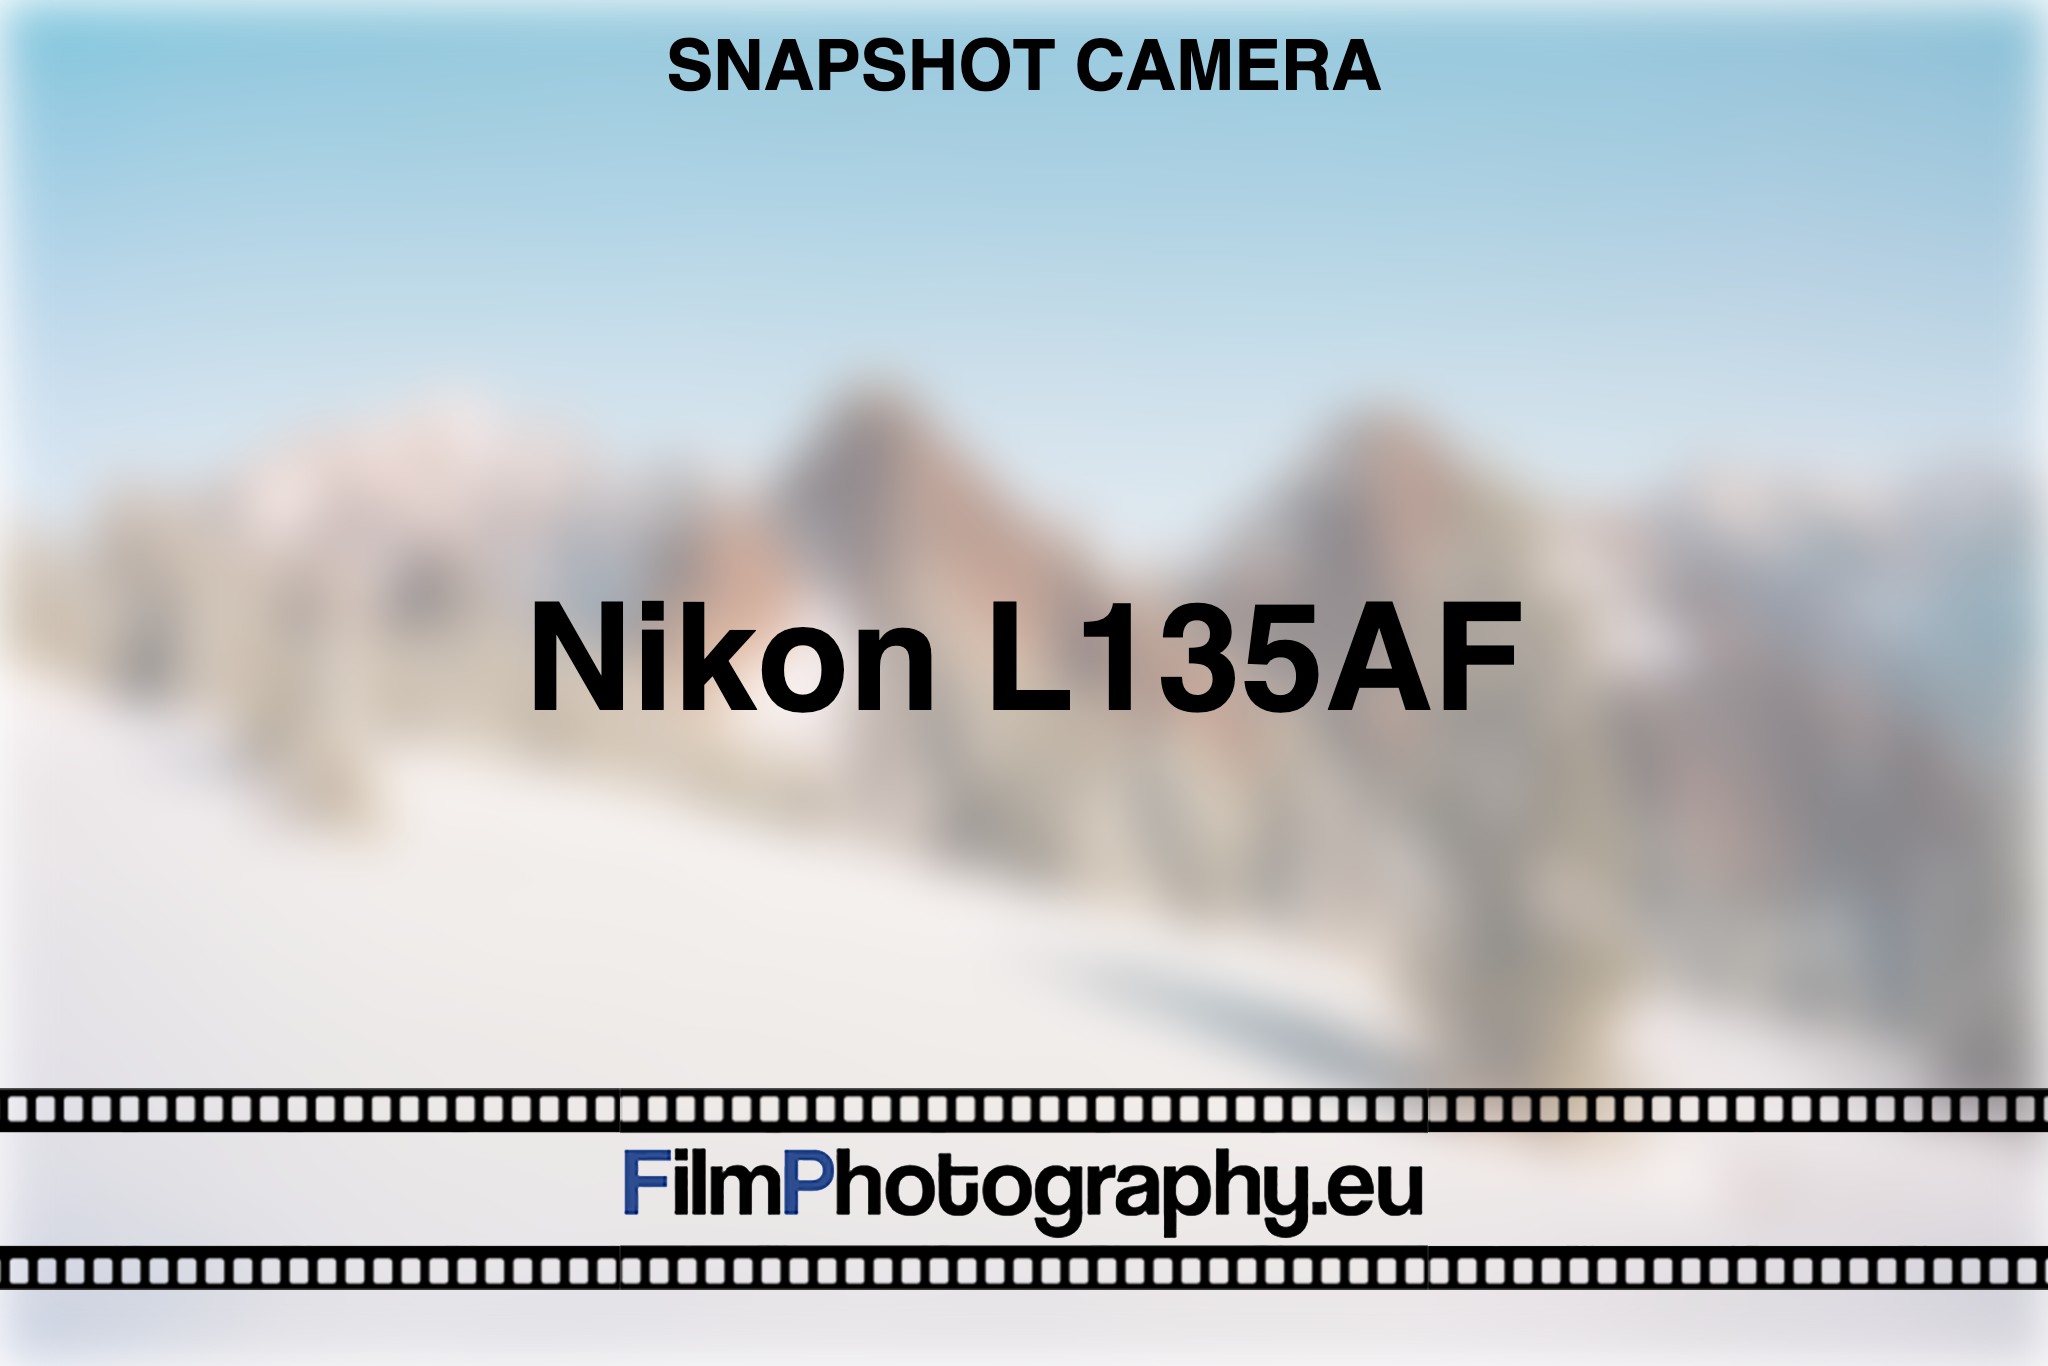 nikon-l135af-snapshot-camera-bnv